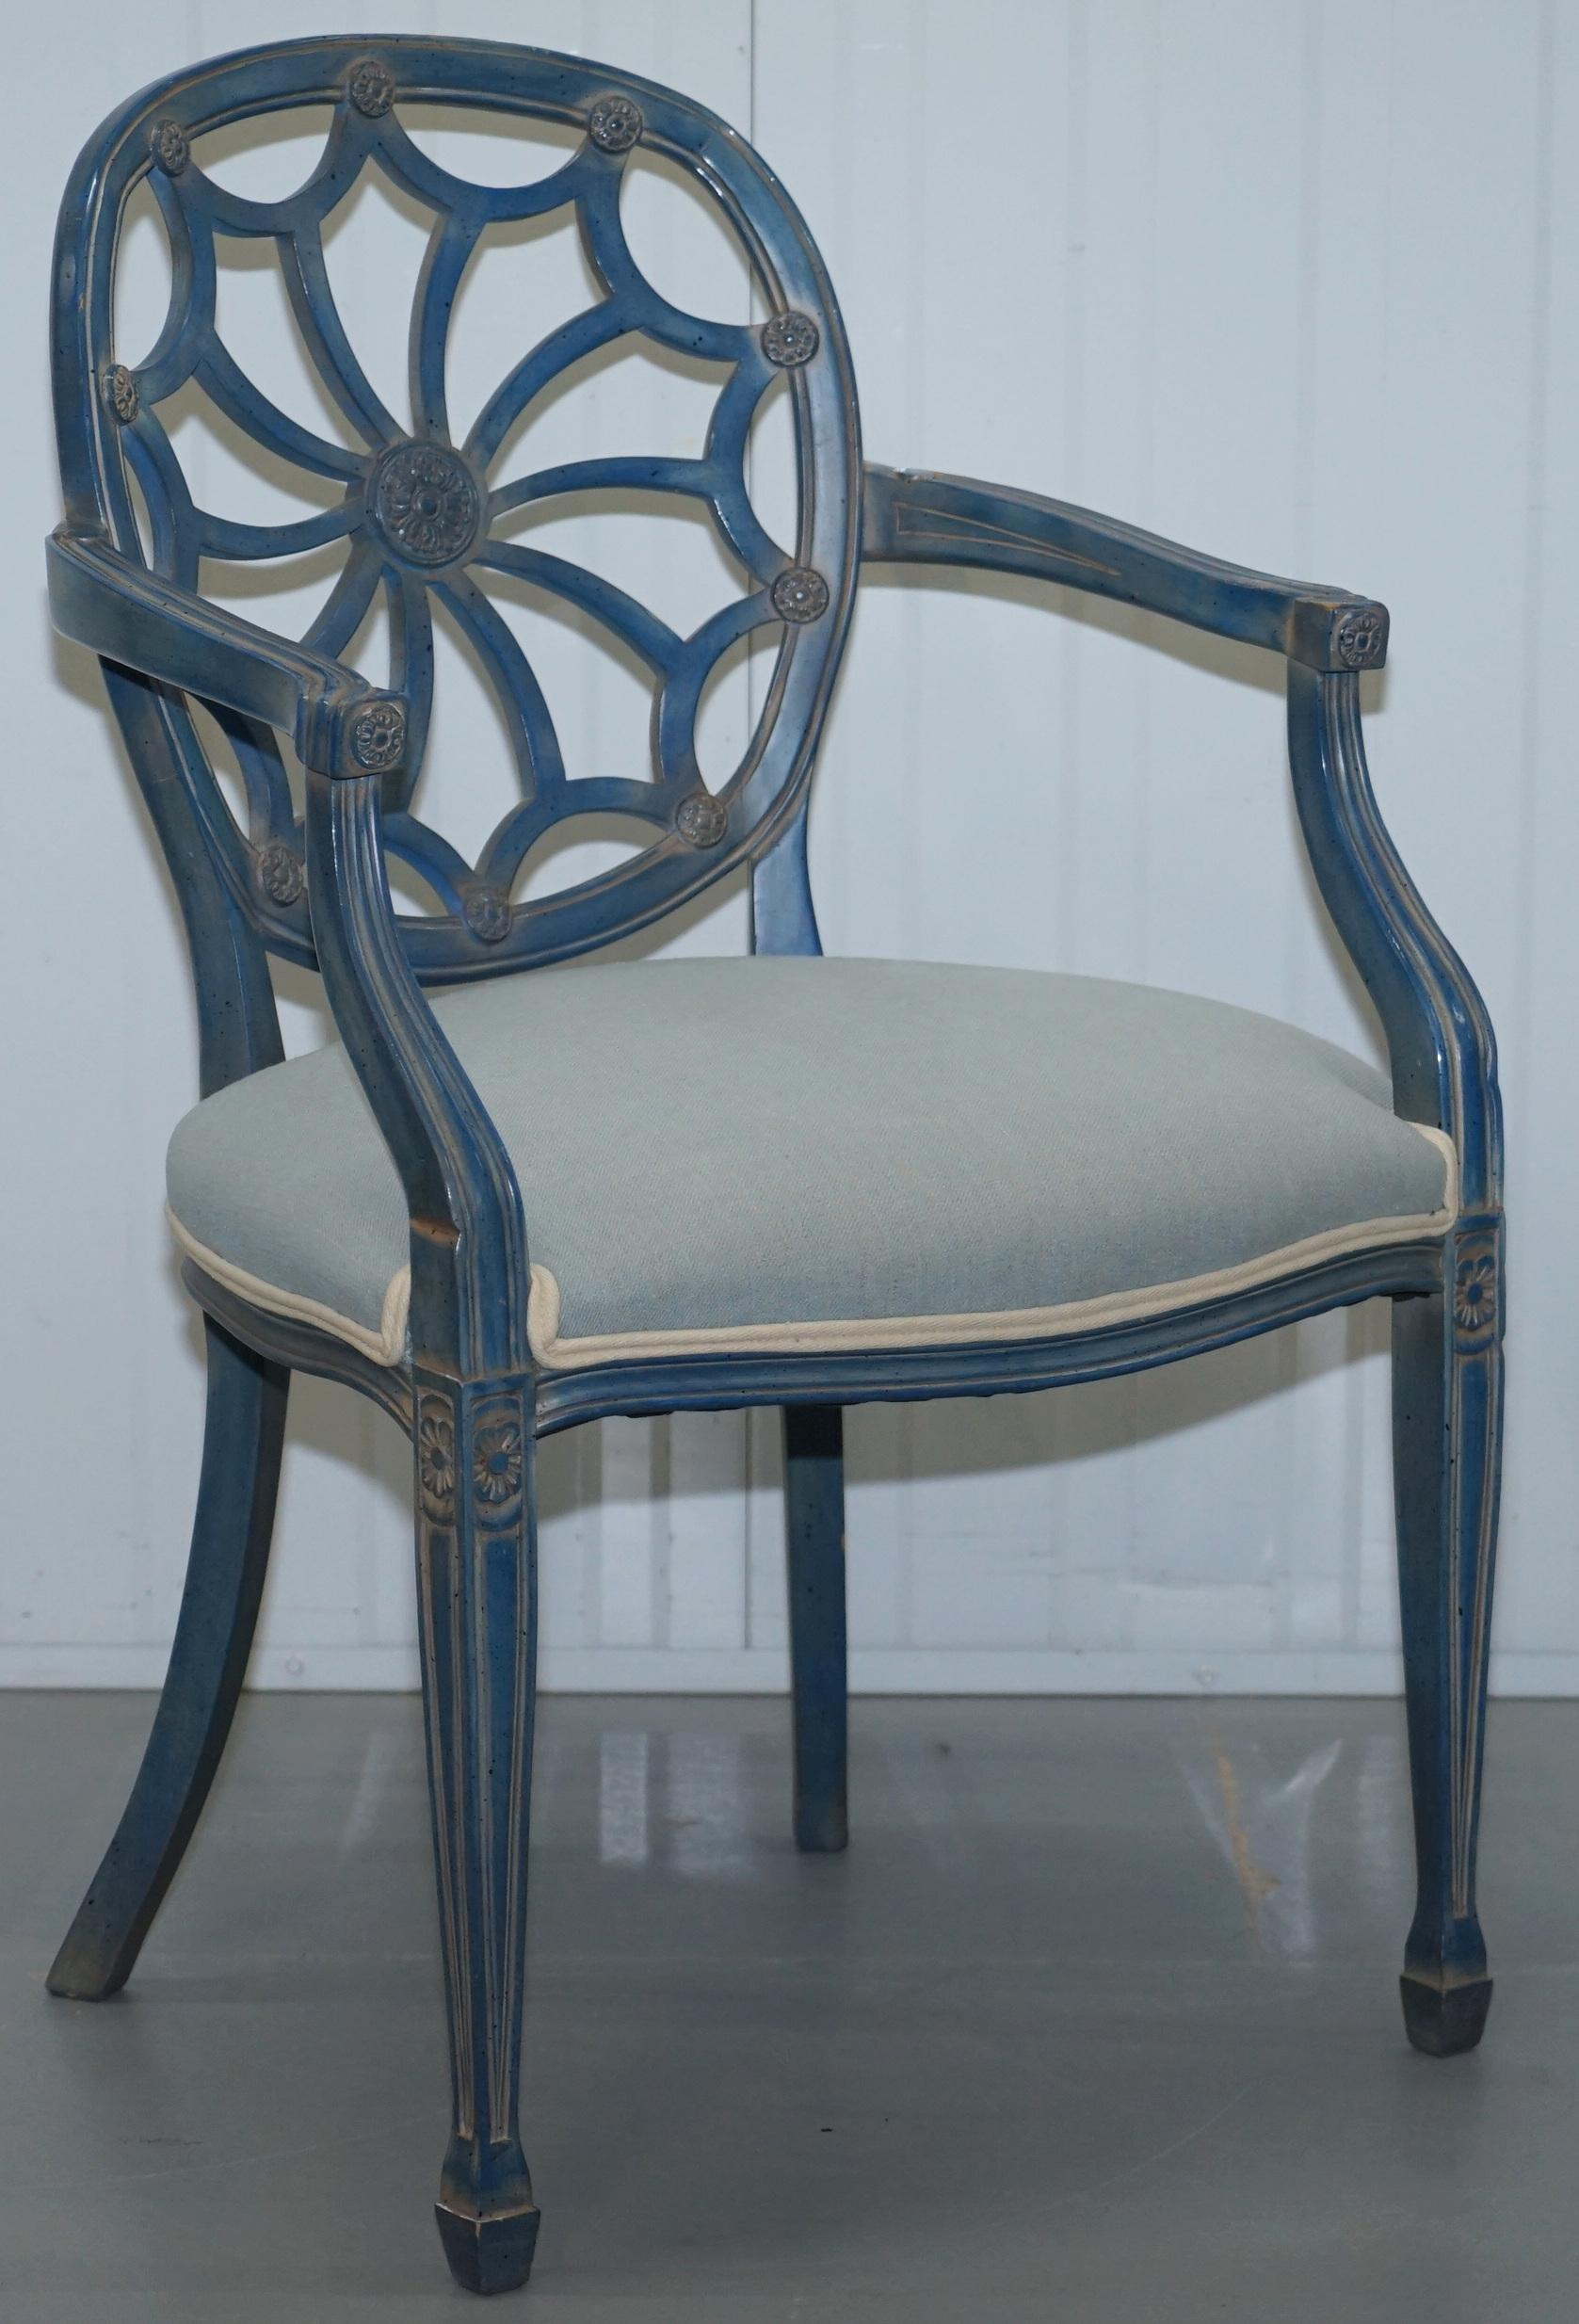 Nous sommes ravis de proposer à la vente cette paire très rare de fauteuils d'appoint George Hepplewhite avec dossier en toile d'araignée

Ces chaises sont l'une des conceptions les plus emblématiques de l'un des plus grands fabricants de meubles